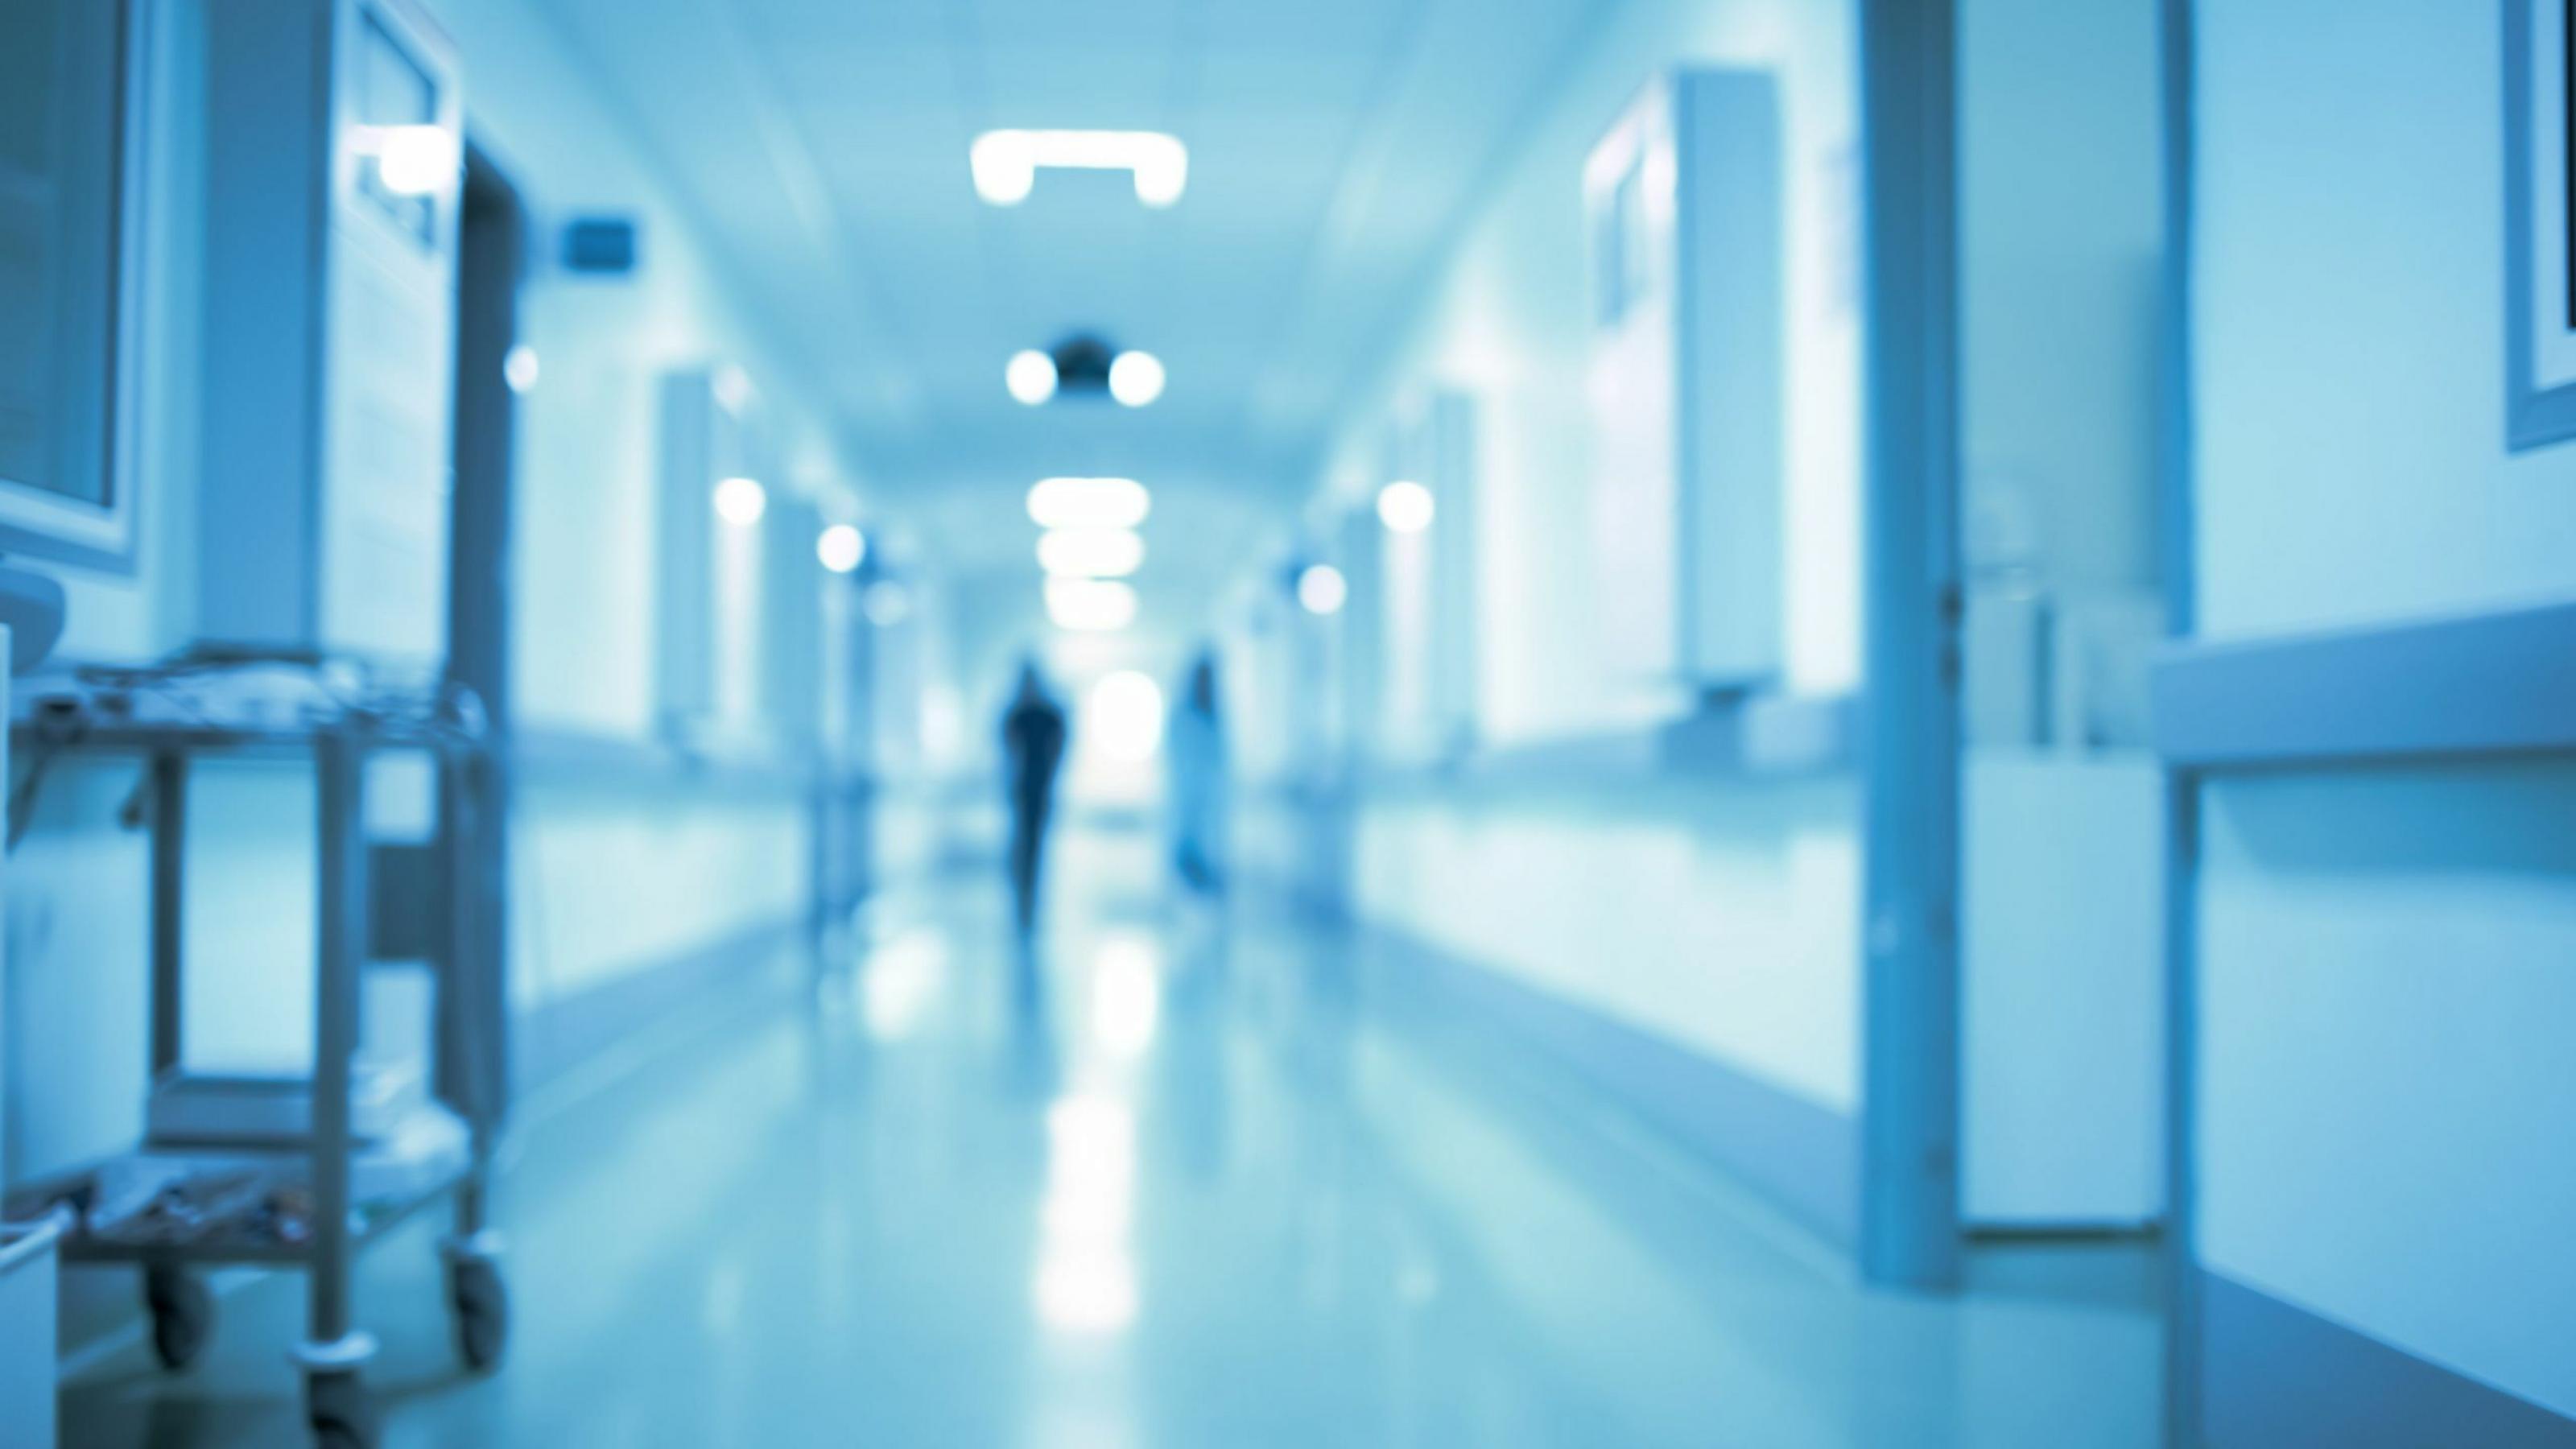 Ein langer Flur im Krankenhaus – Über eine Patientenverfügung kann man Ärzten mitteilen, wie man behandelt werden möchte.